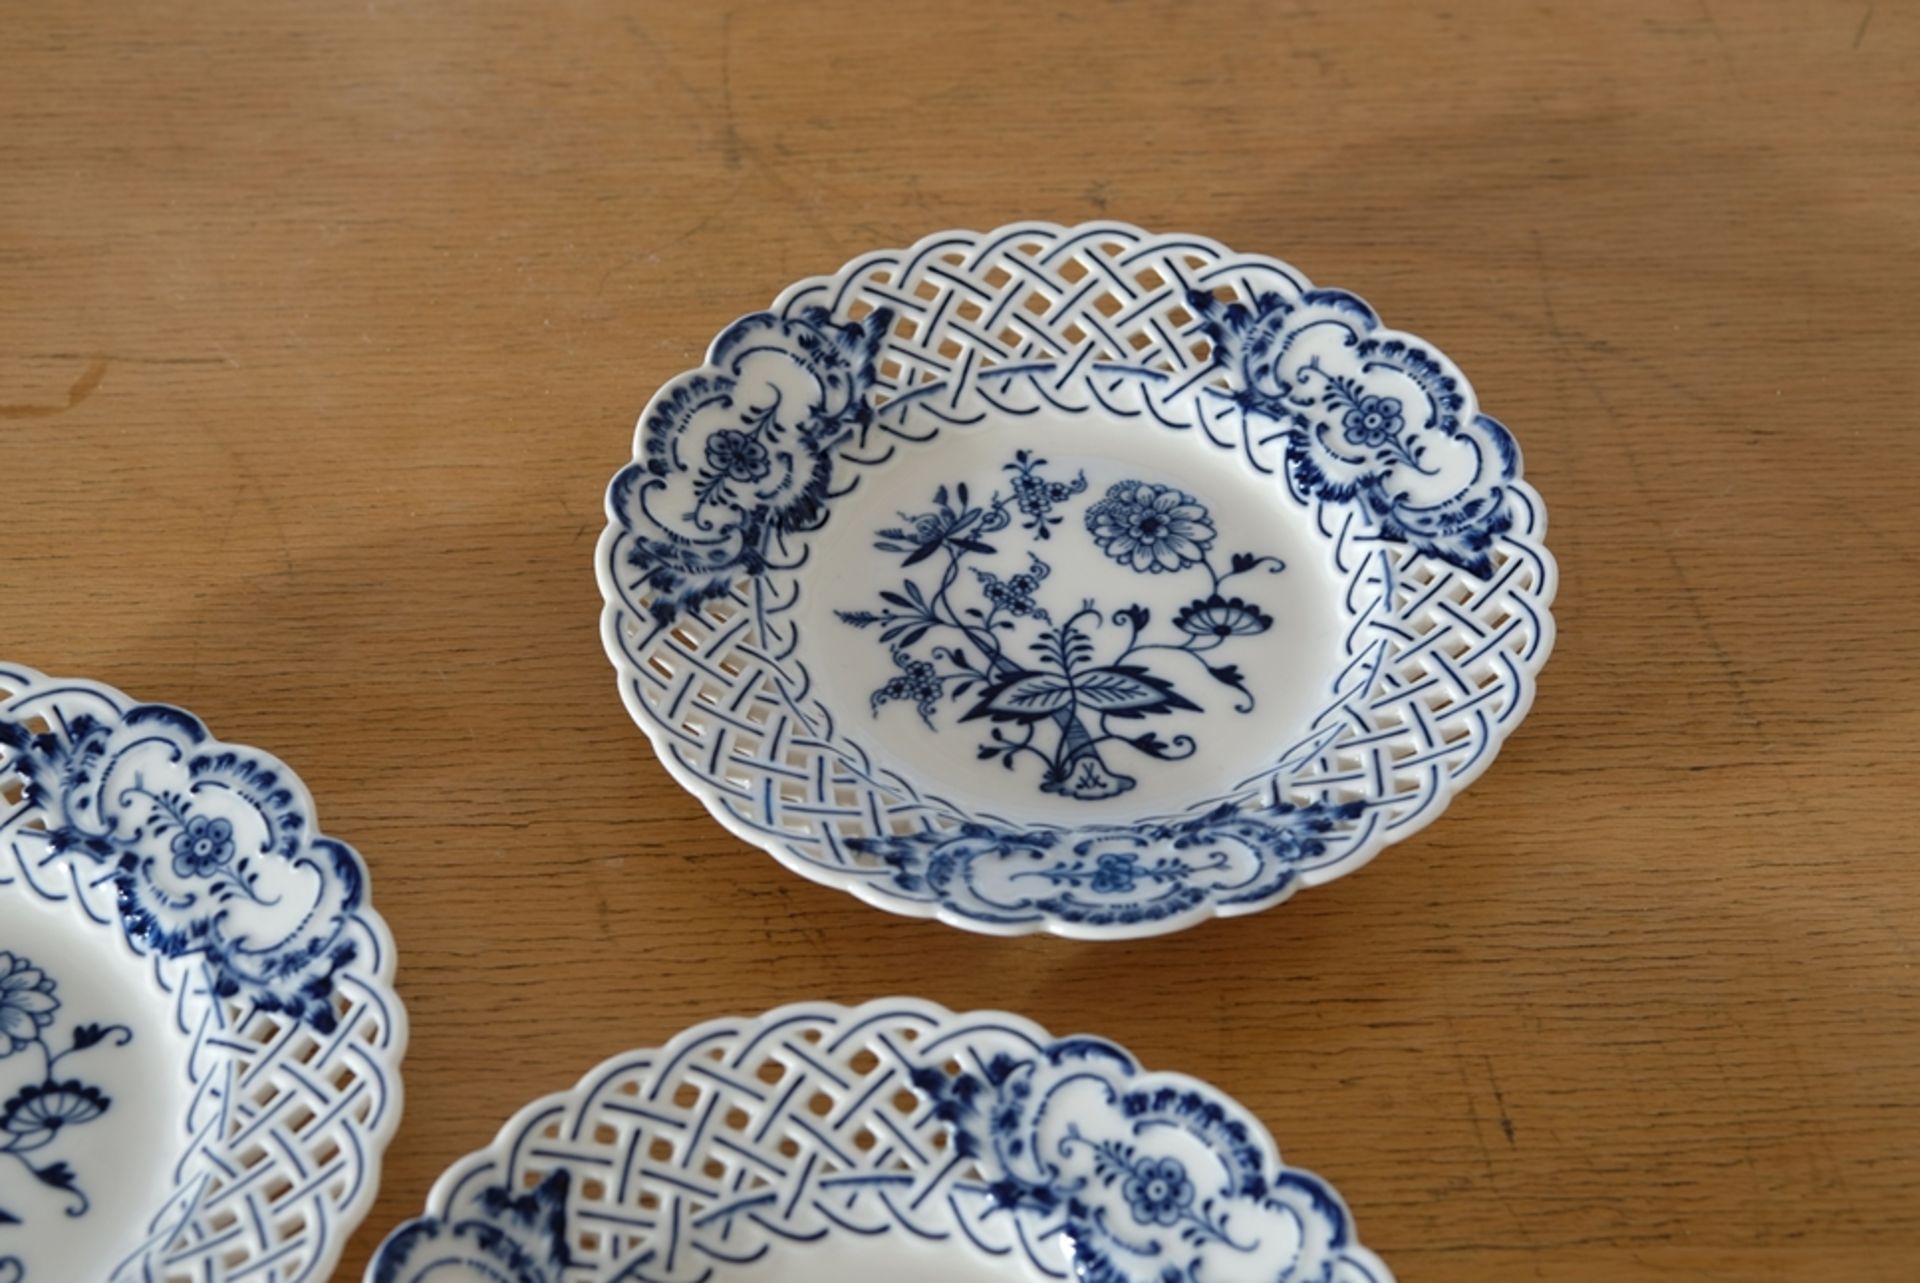 Three Meissen openwork plates, onion pattern in blue, pierced wavy rim, Meissen sword mark, mould n - Image 3 of 5